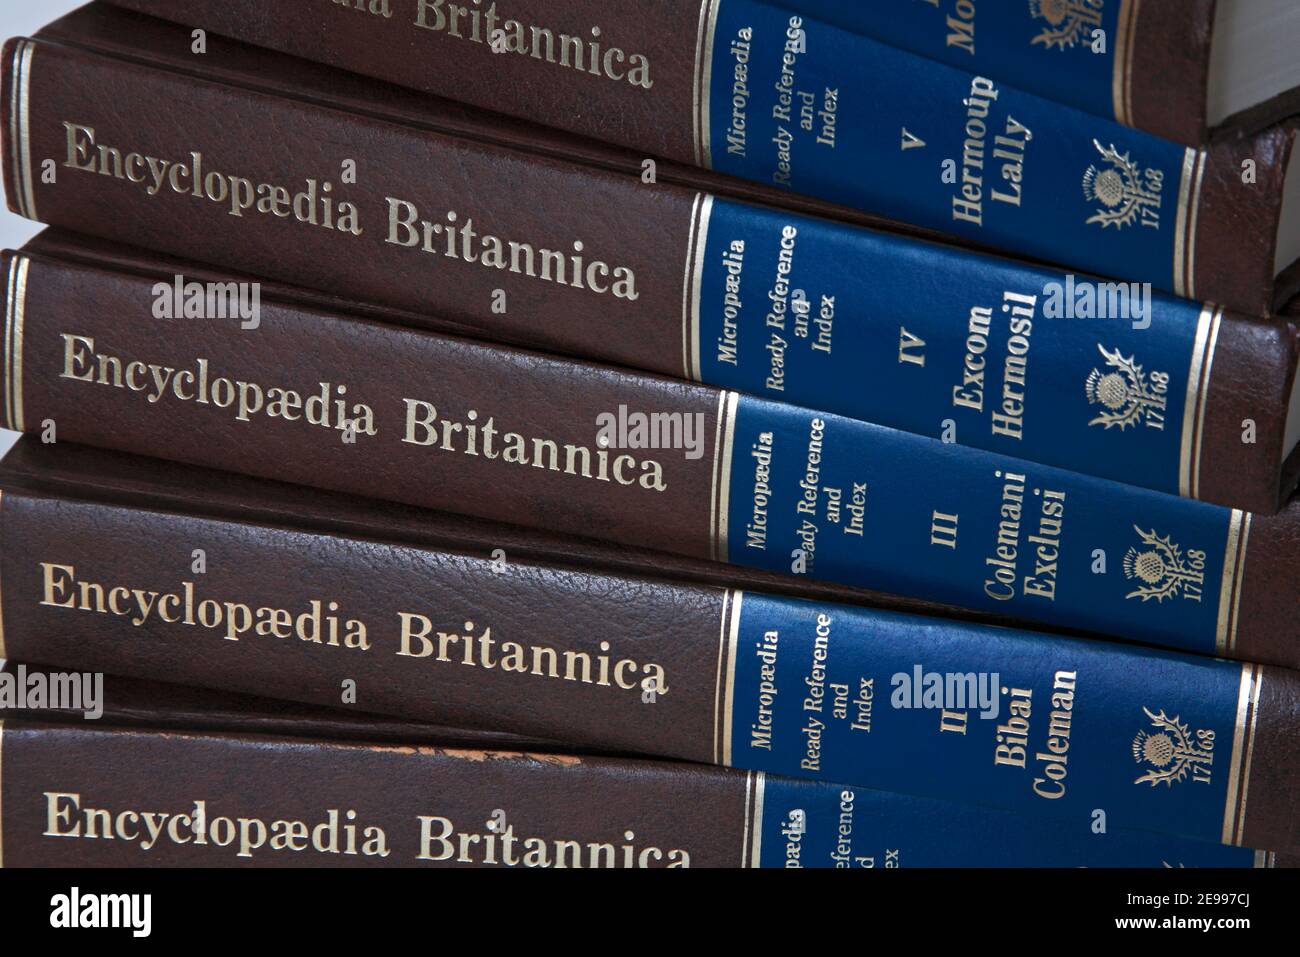 Eine Nahaufnahme eines Teils der Micropedia-Sektion der New Encyclopedia Britannica 1980 Edition Bände mit Ready Reference und Index. Stockfoto